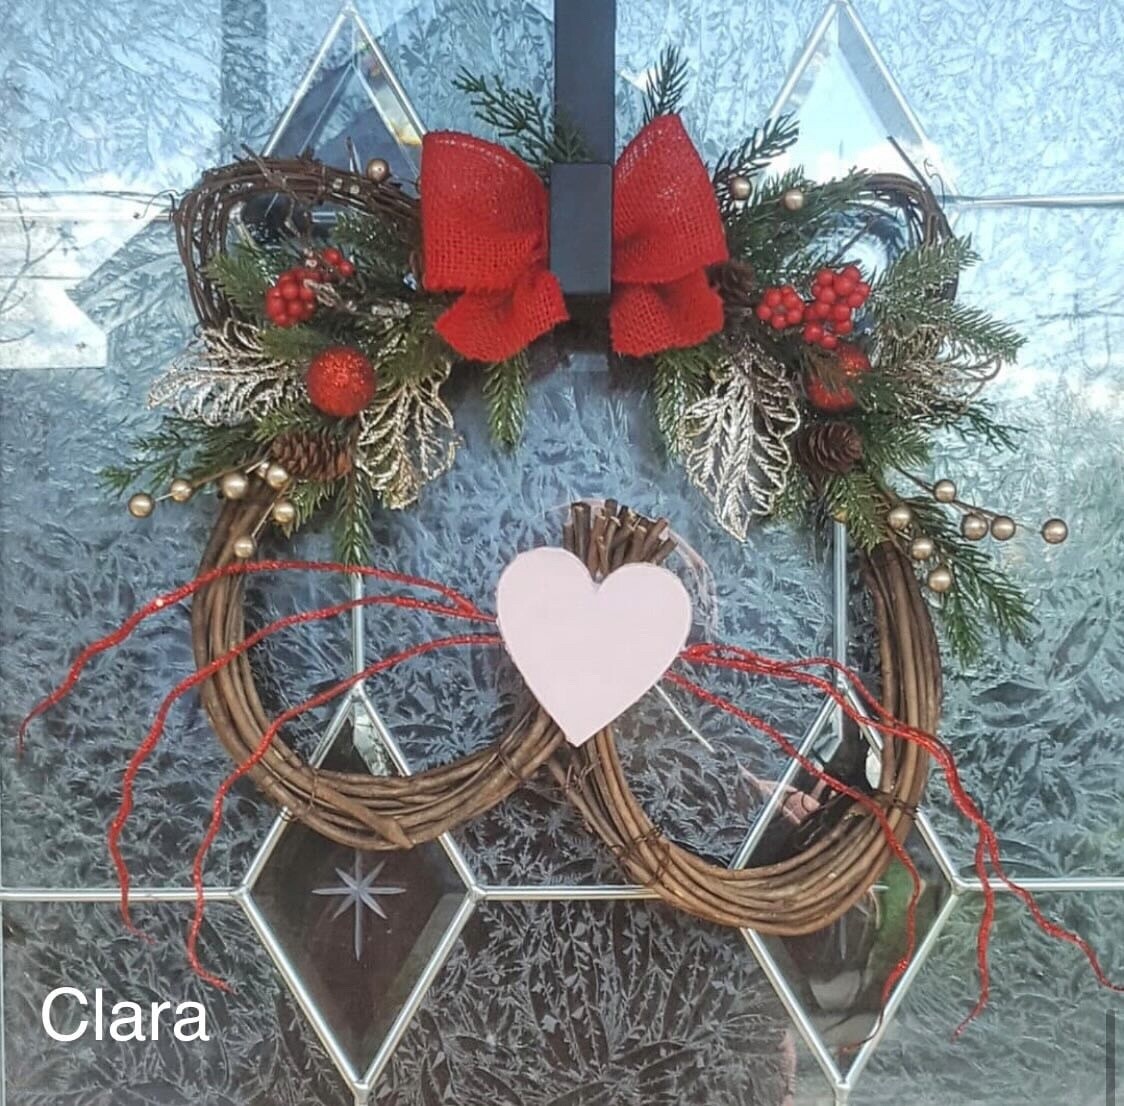 Clara wreath